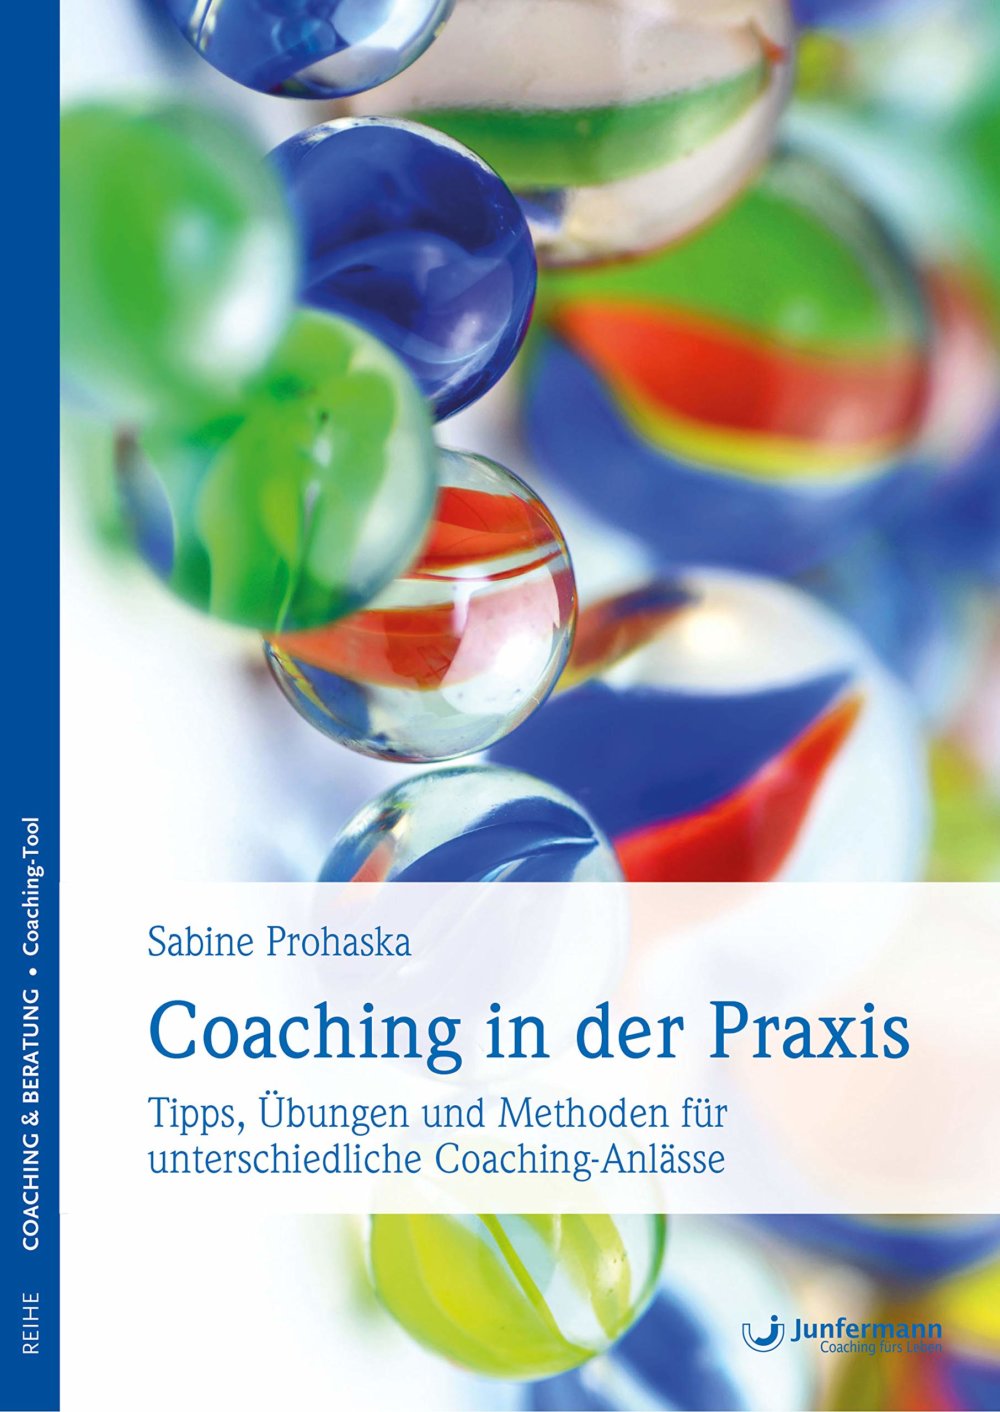 Buch: Coaching in der Praxis: Tipps, Übungen und Methoden für unterschiedliche Coaching-Anlässe (Amazon)